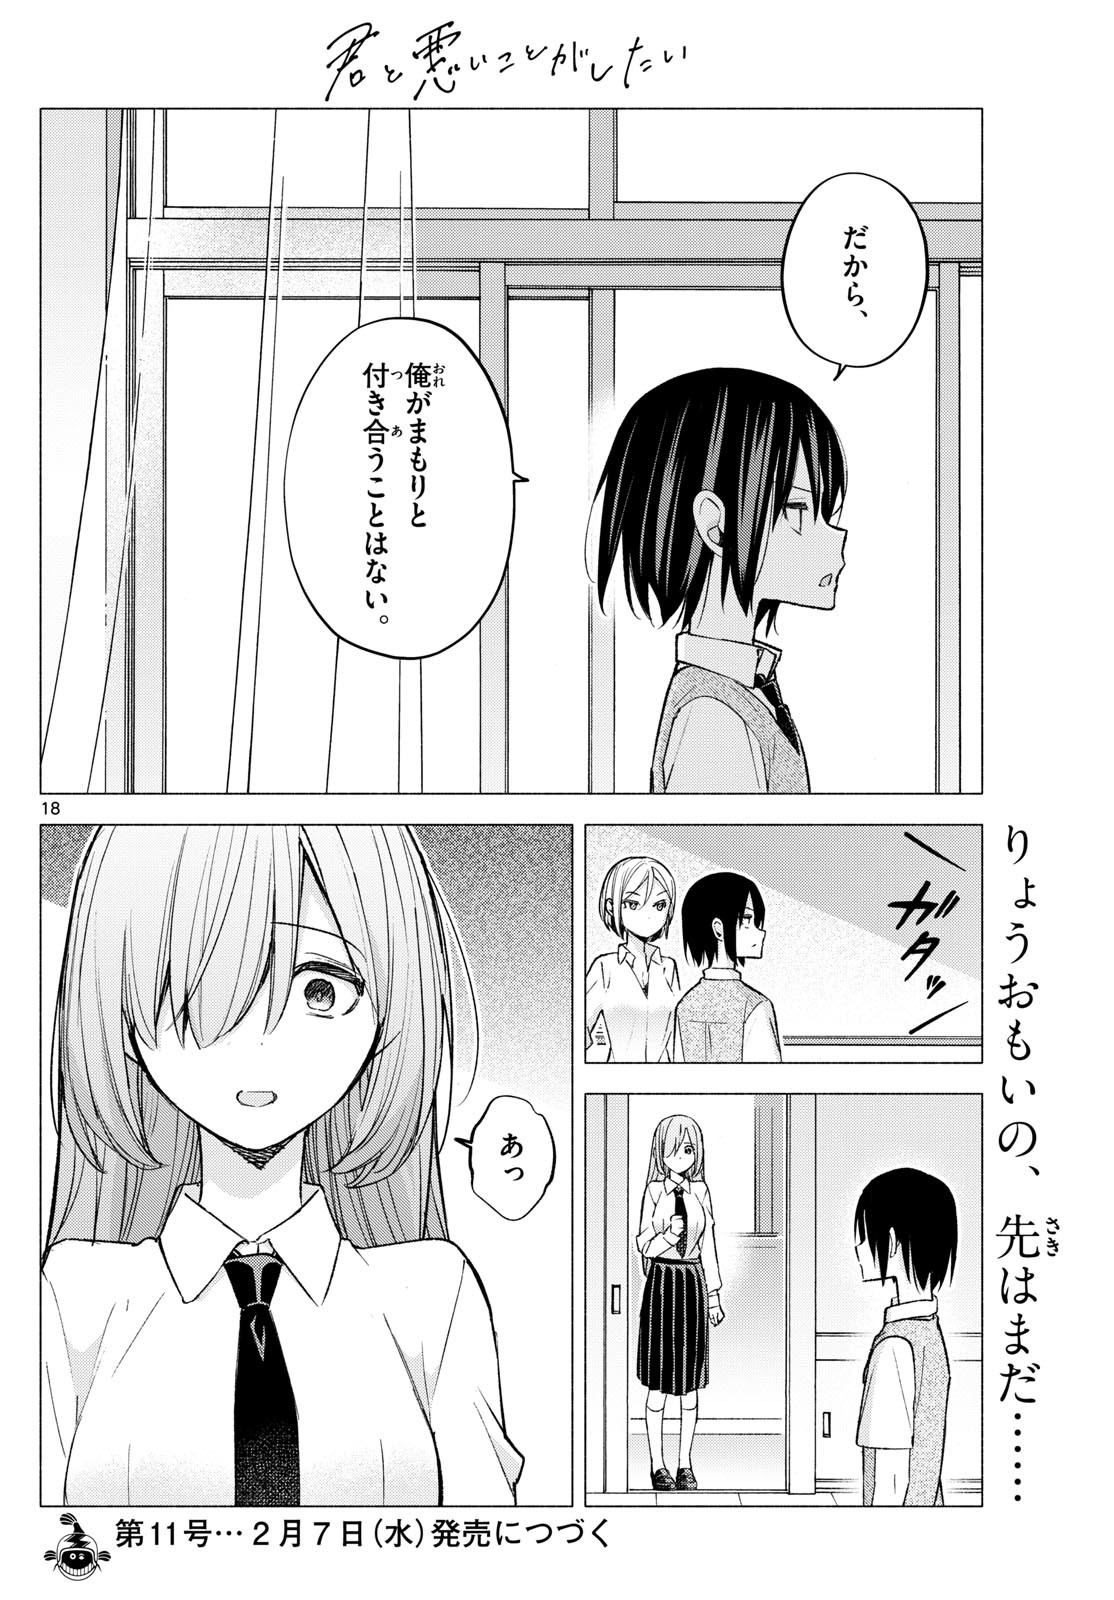 Kimi to Warui Koto ga Shitai - Chapter 060 - Page 18